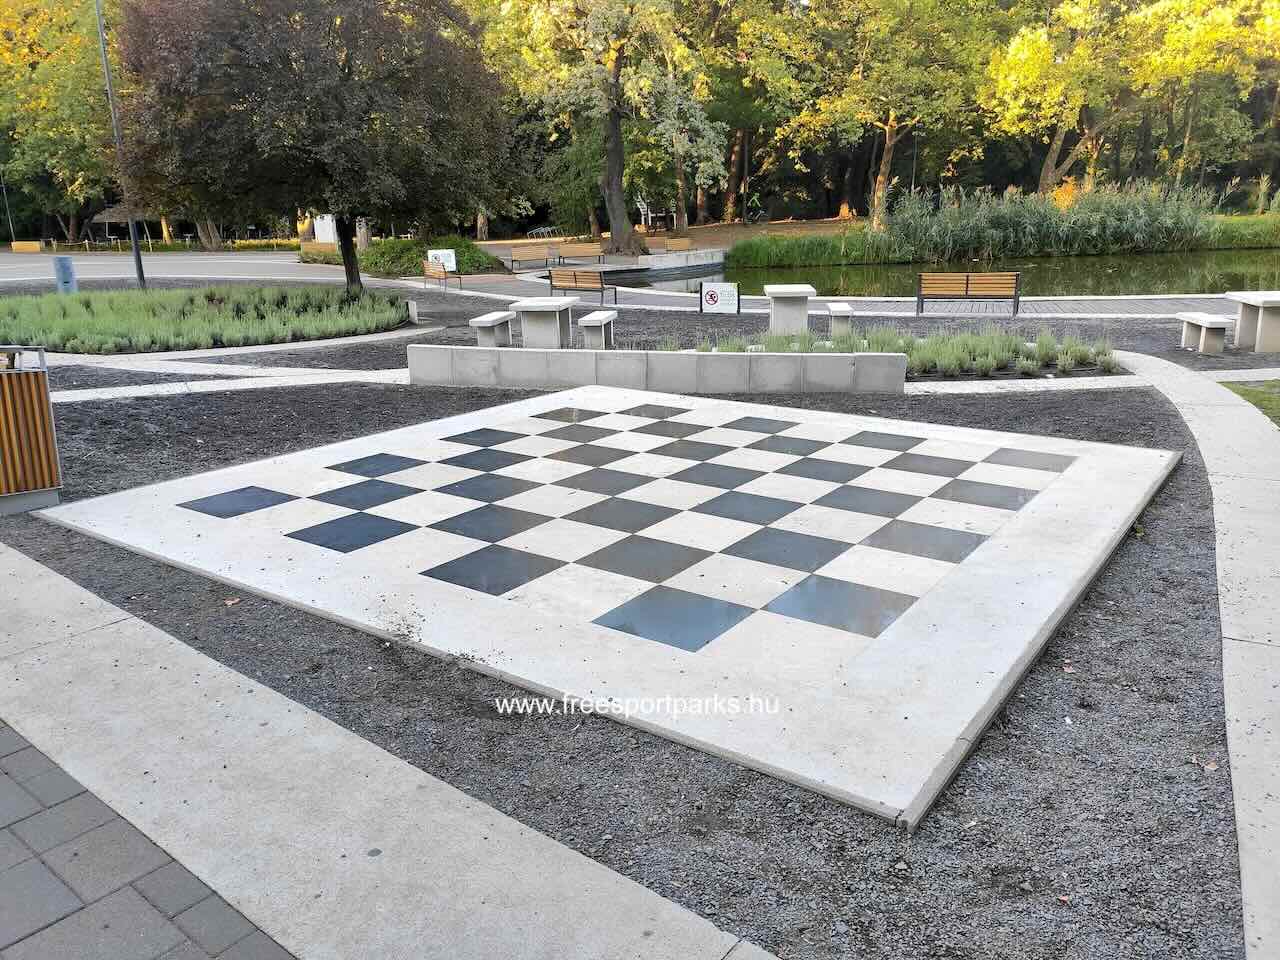 szabadtéri sakktábla, Nagyerdei park, Debrecen - Free Sport Parks Blog